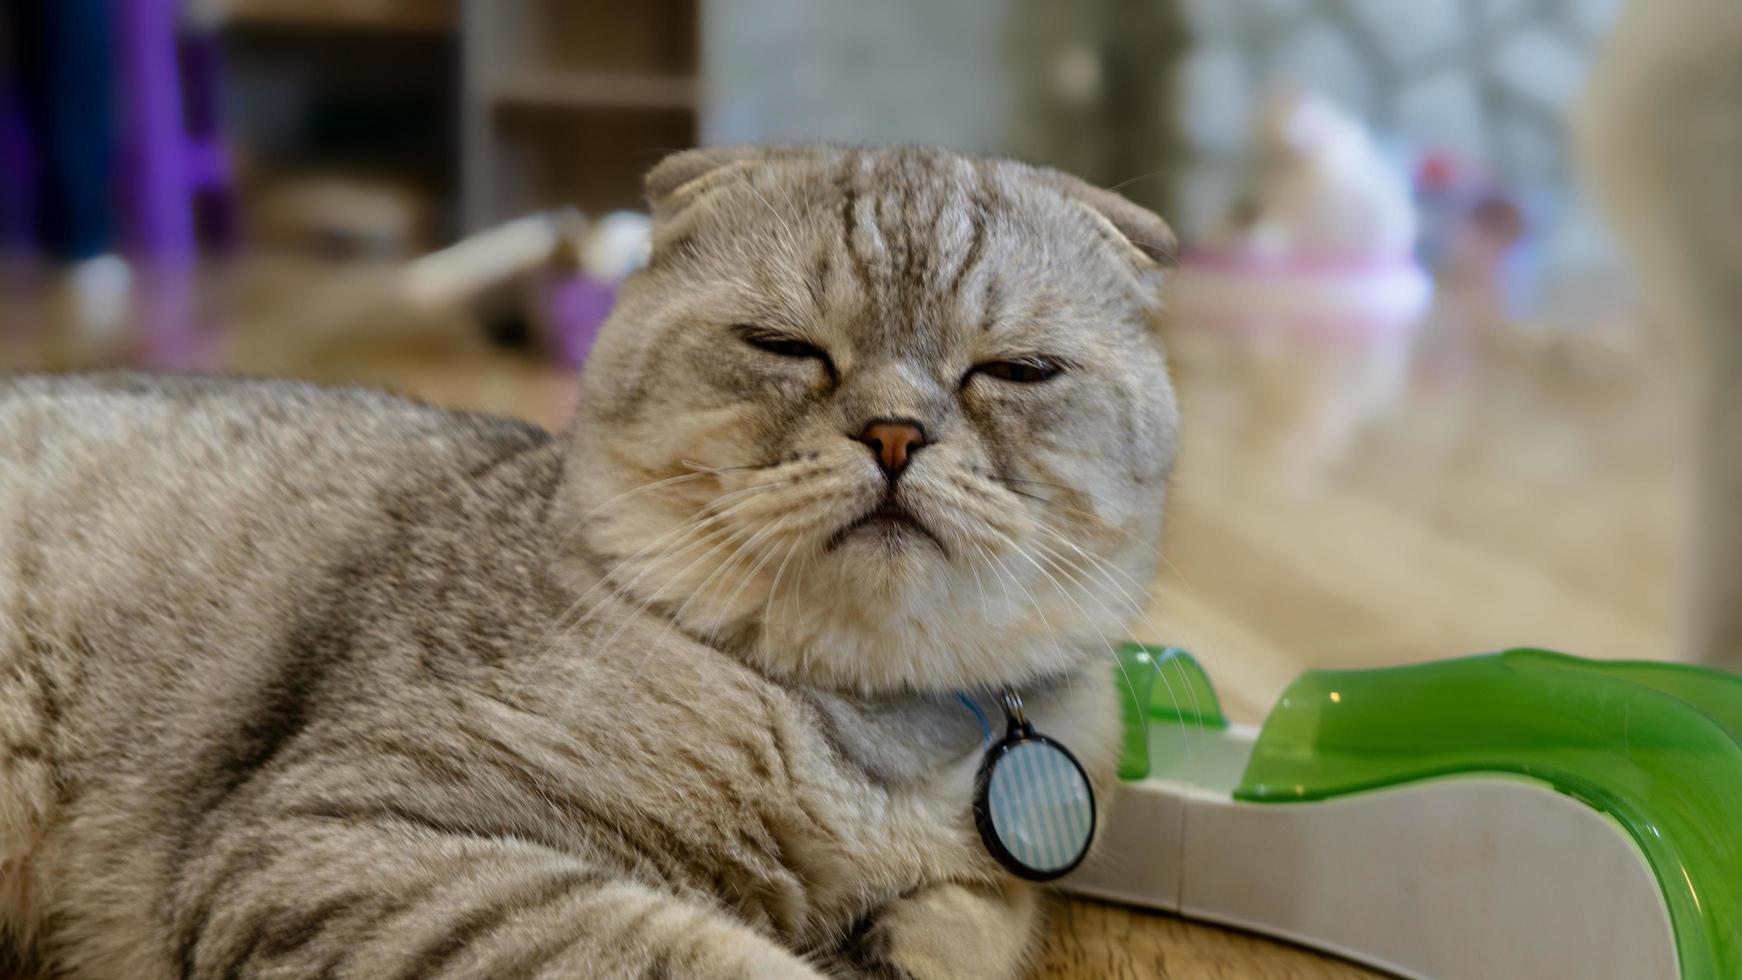 un bellissimo gatto domestico sta riposando in una stanza calda e leggera, un gatto grigio a pelo corto con gli occhi verdi che guarda la telecamera foto